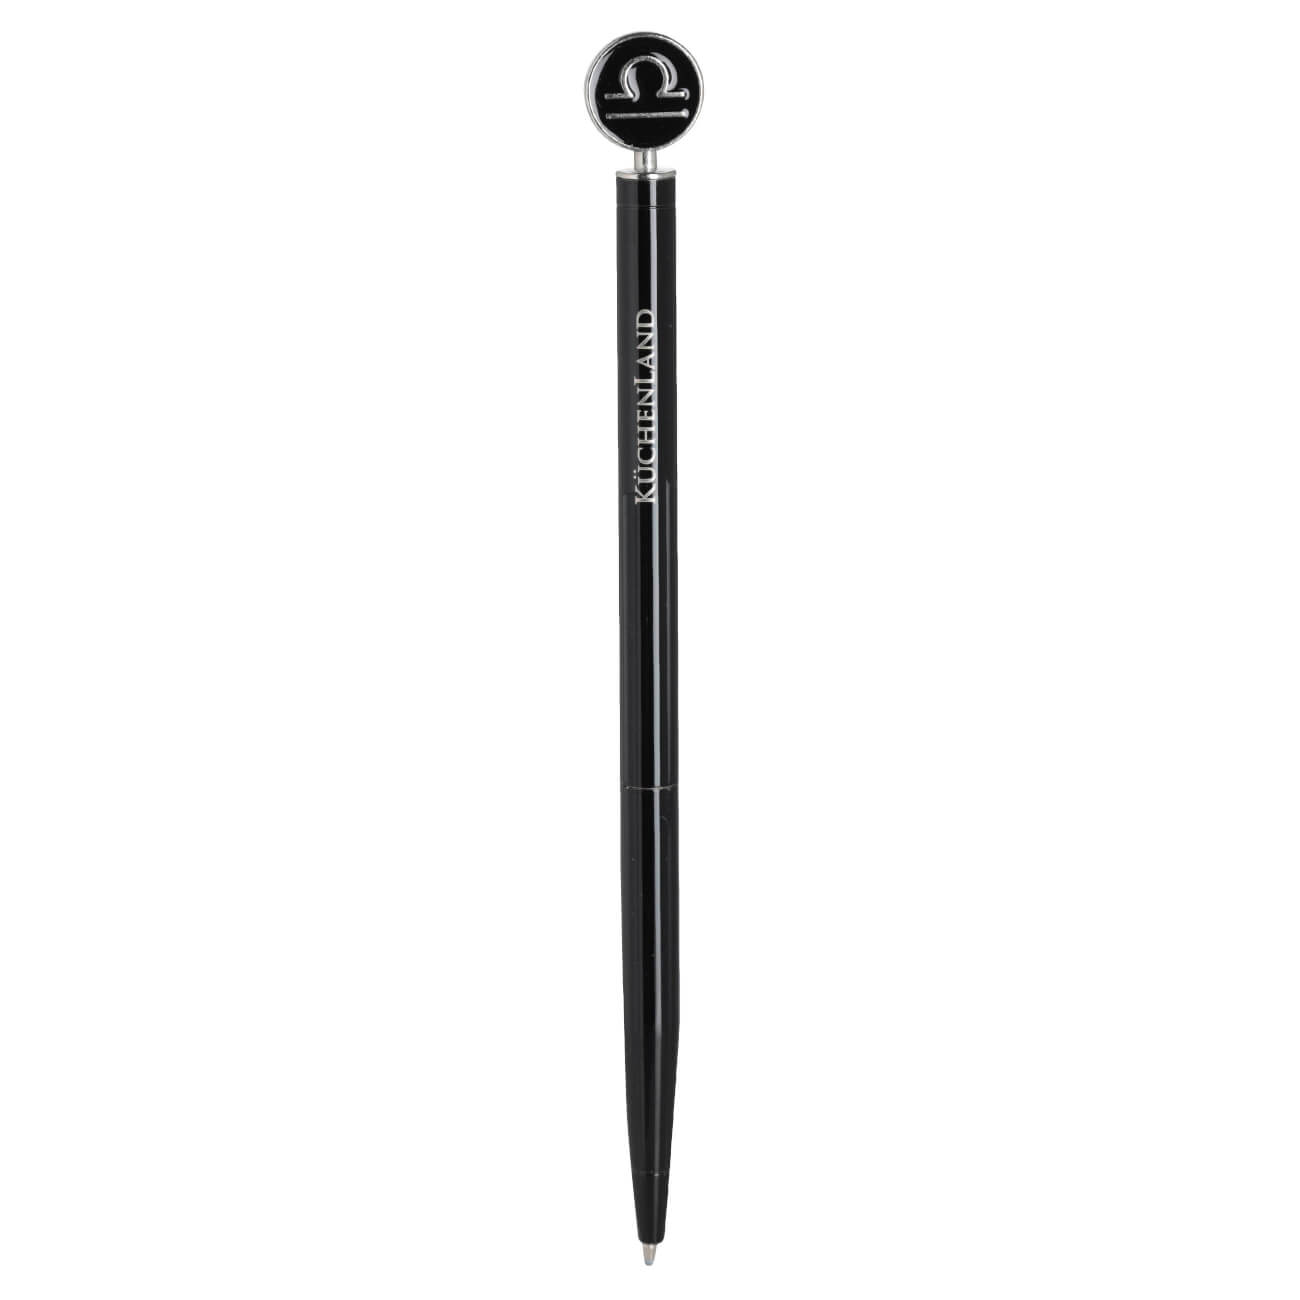 Ручка шариковая, 15 см, с фигуркой, сталь, черно-серебристая, Весы, Zodiac грабли длина 25 см деревянная ручка